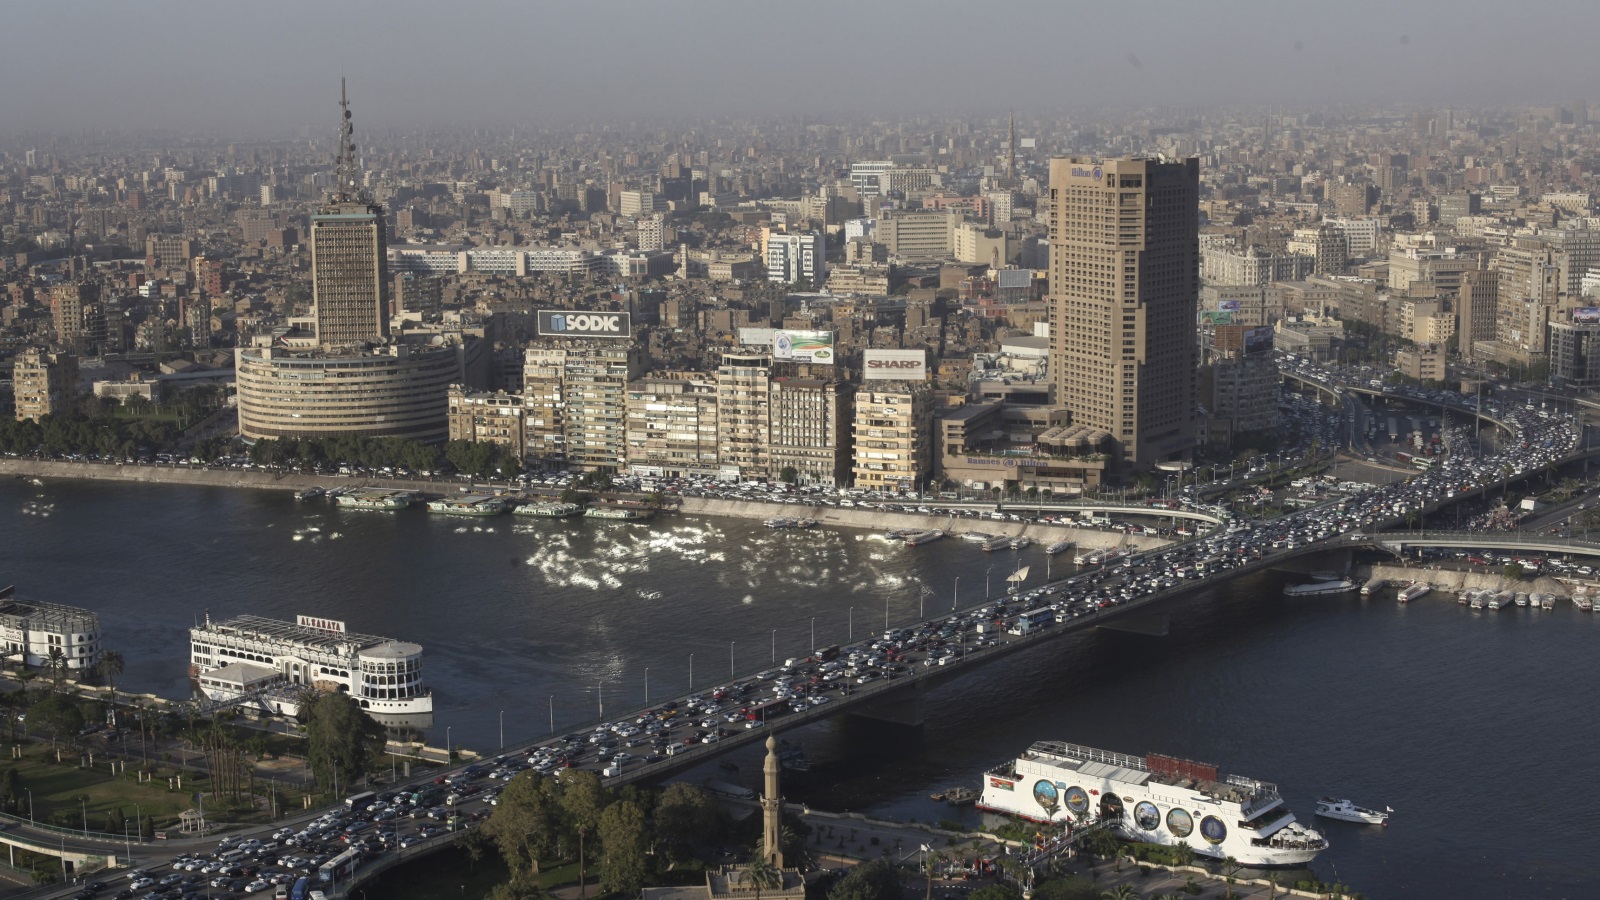 حين تحول جسر قصر النيل إلى معبر لحشود المتظاهرين نحو ميدان التحرير الذي تحول بدوره إلى ساحة غضب، لذلك تسعى الحكومة لتغيير عمارة الميادين وتفريغها وتحويلها إلى فنادق ومنتجعات لشركات استثمارية كبرى